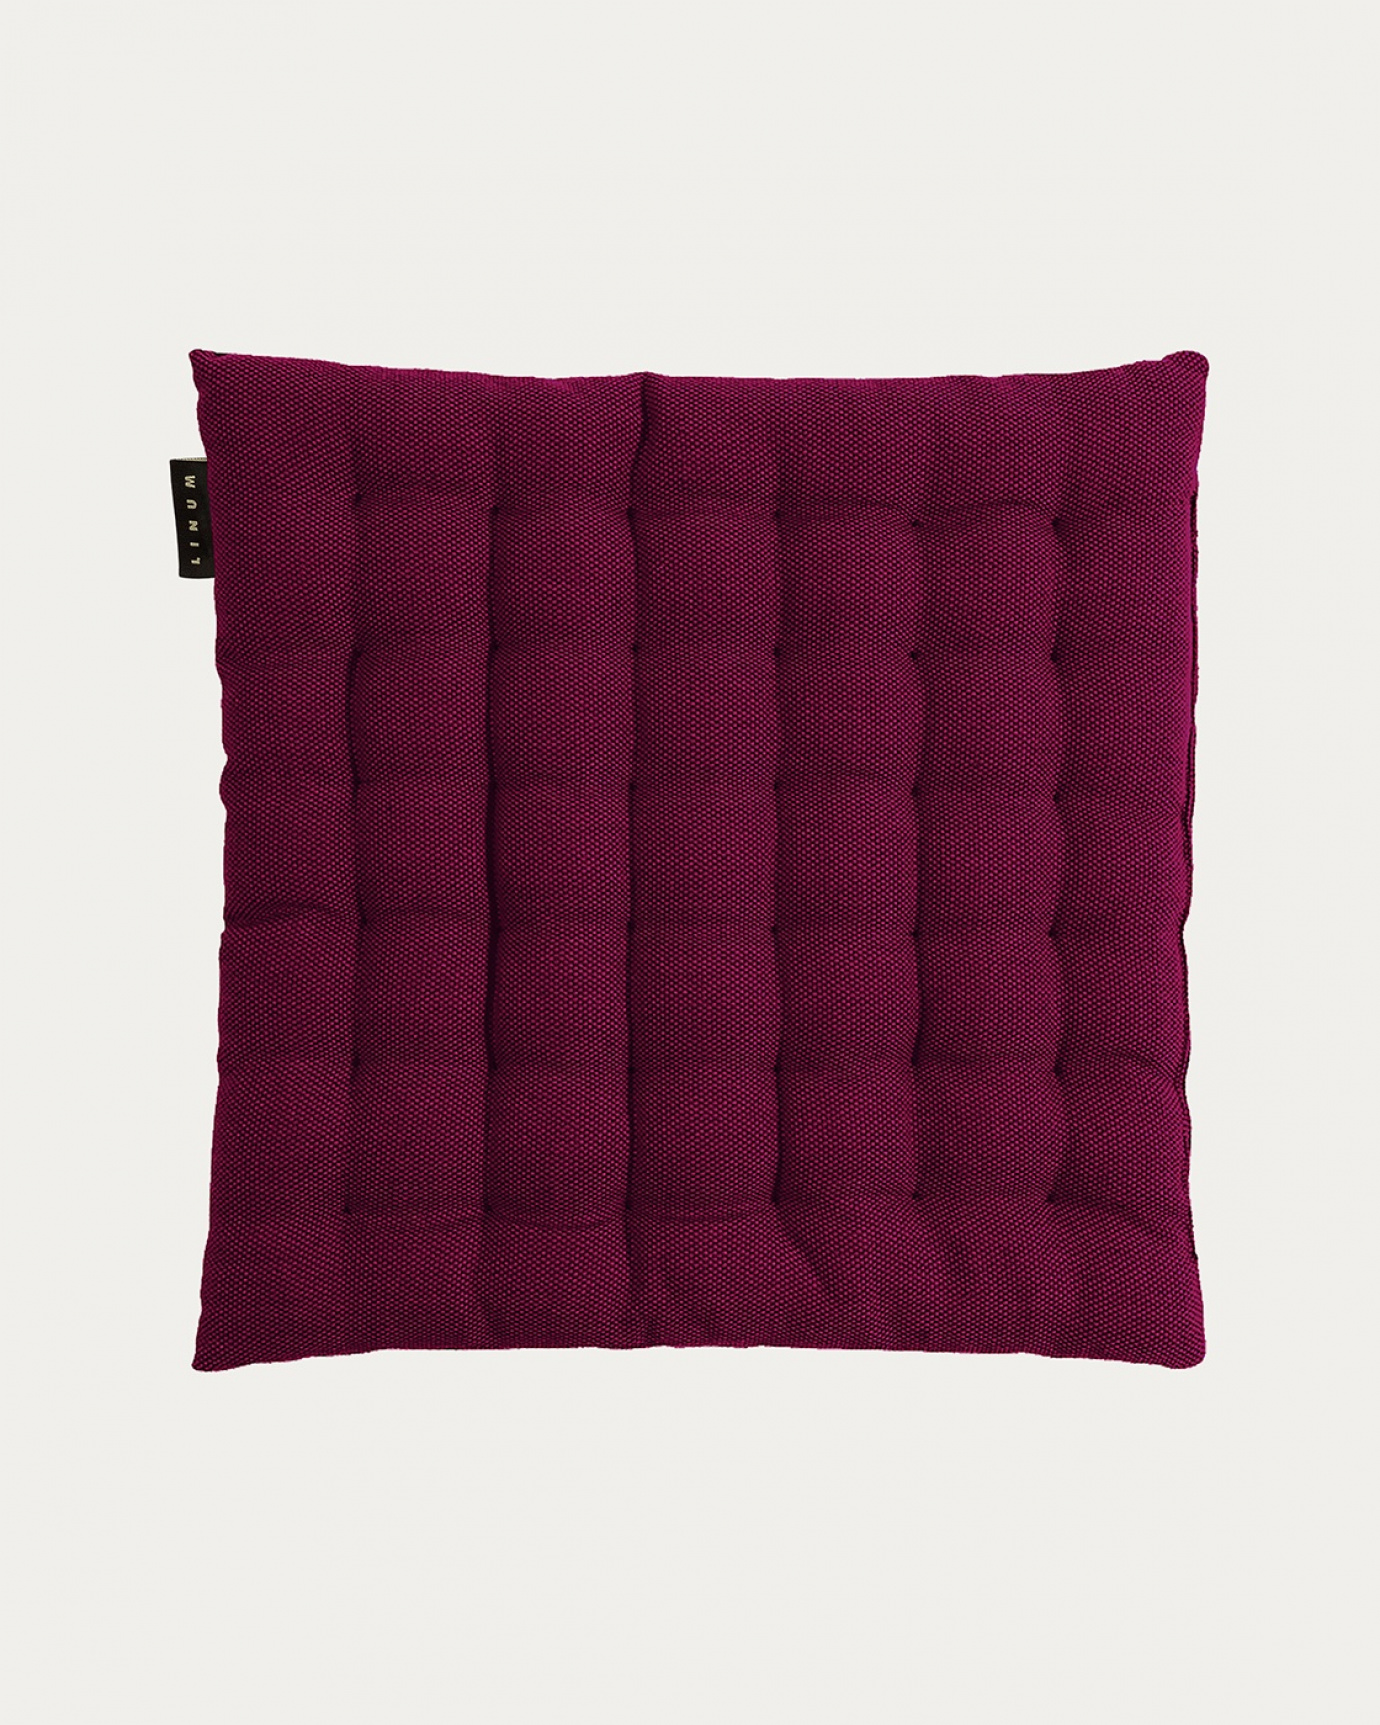 Immagine prodotto rosso borgogna PEPPER cuscini sedie di cotone con imbottitura in poliestere di LINUM DESIGN. Dimensioni 40x40 cm.